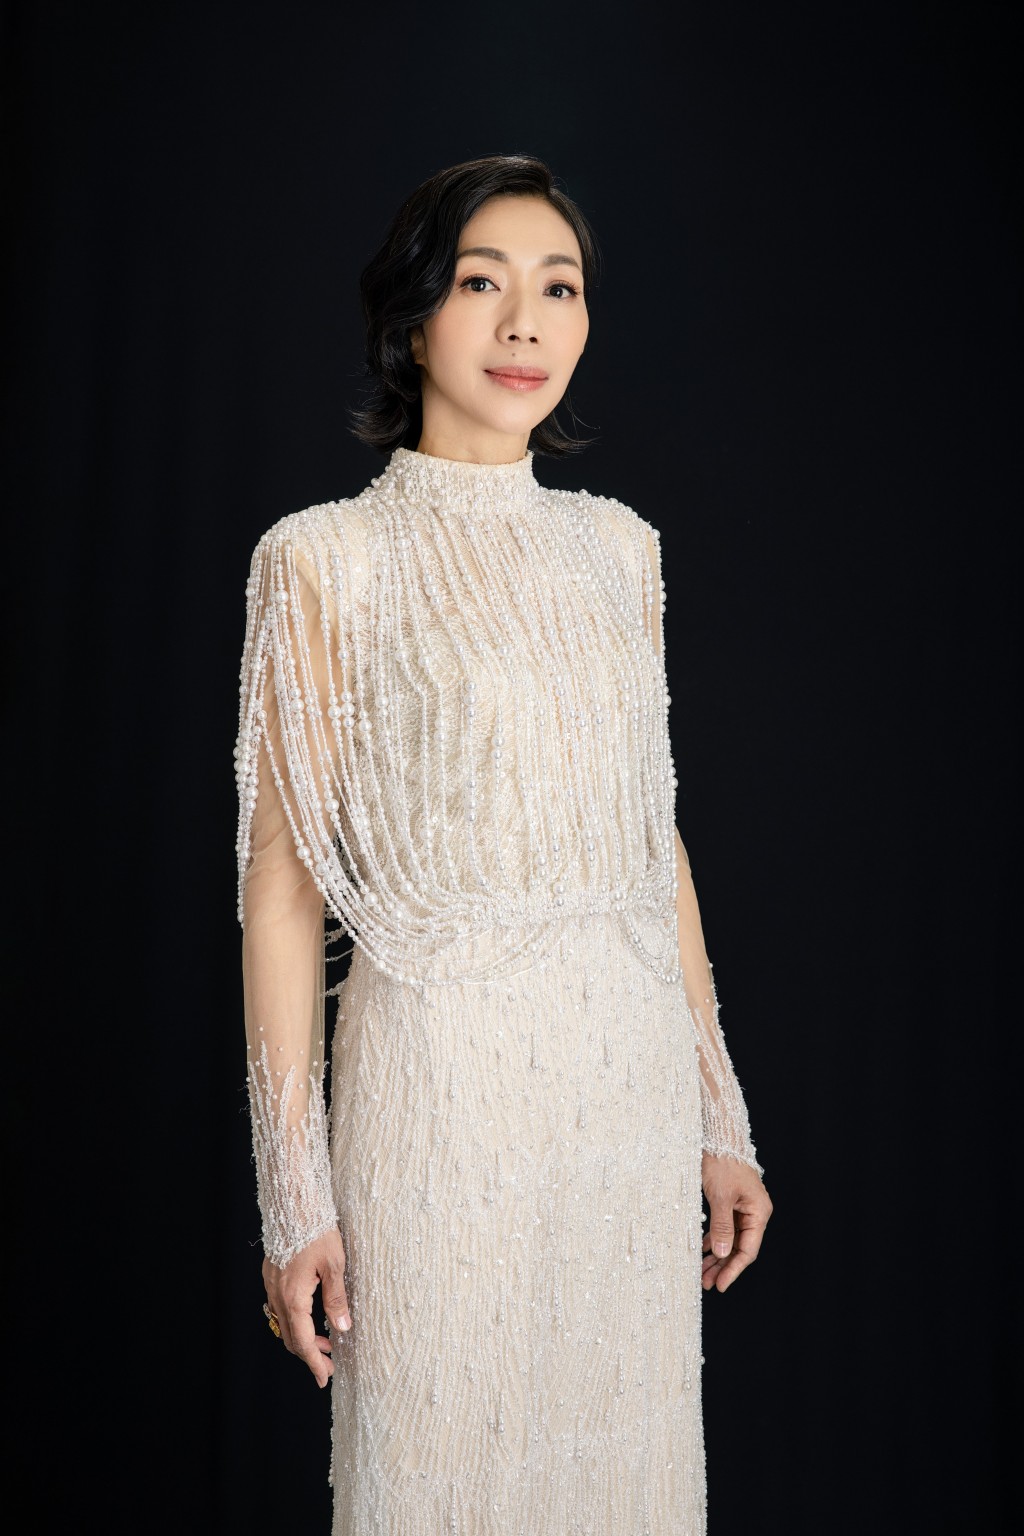 台灣歌后萬芳將以獨特嗓音演繹《新不了情》及《不了情》。